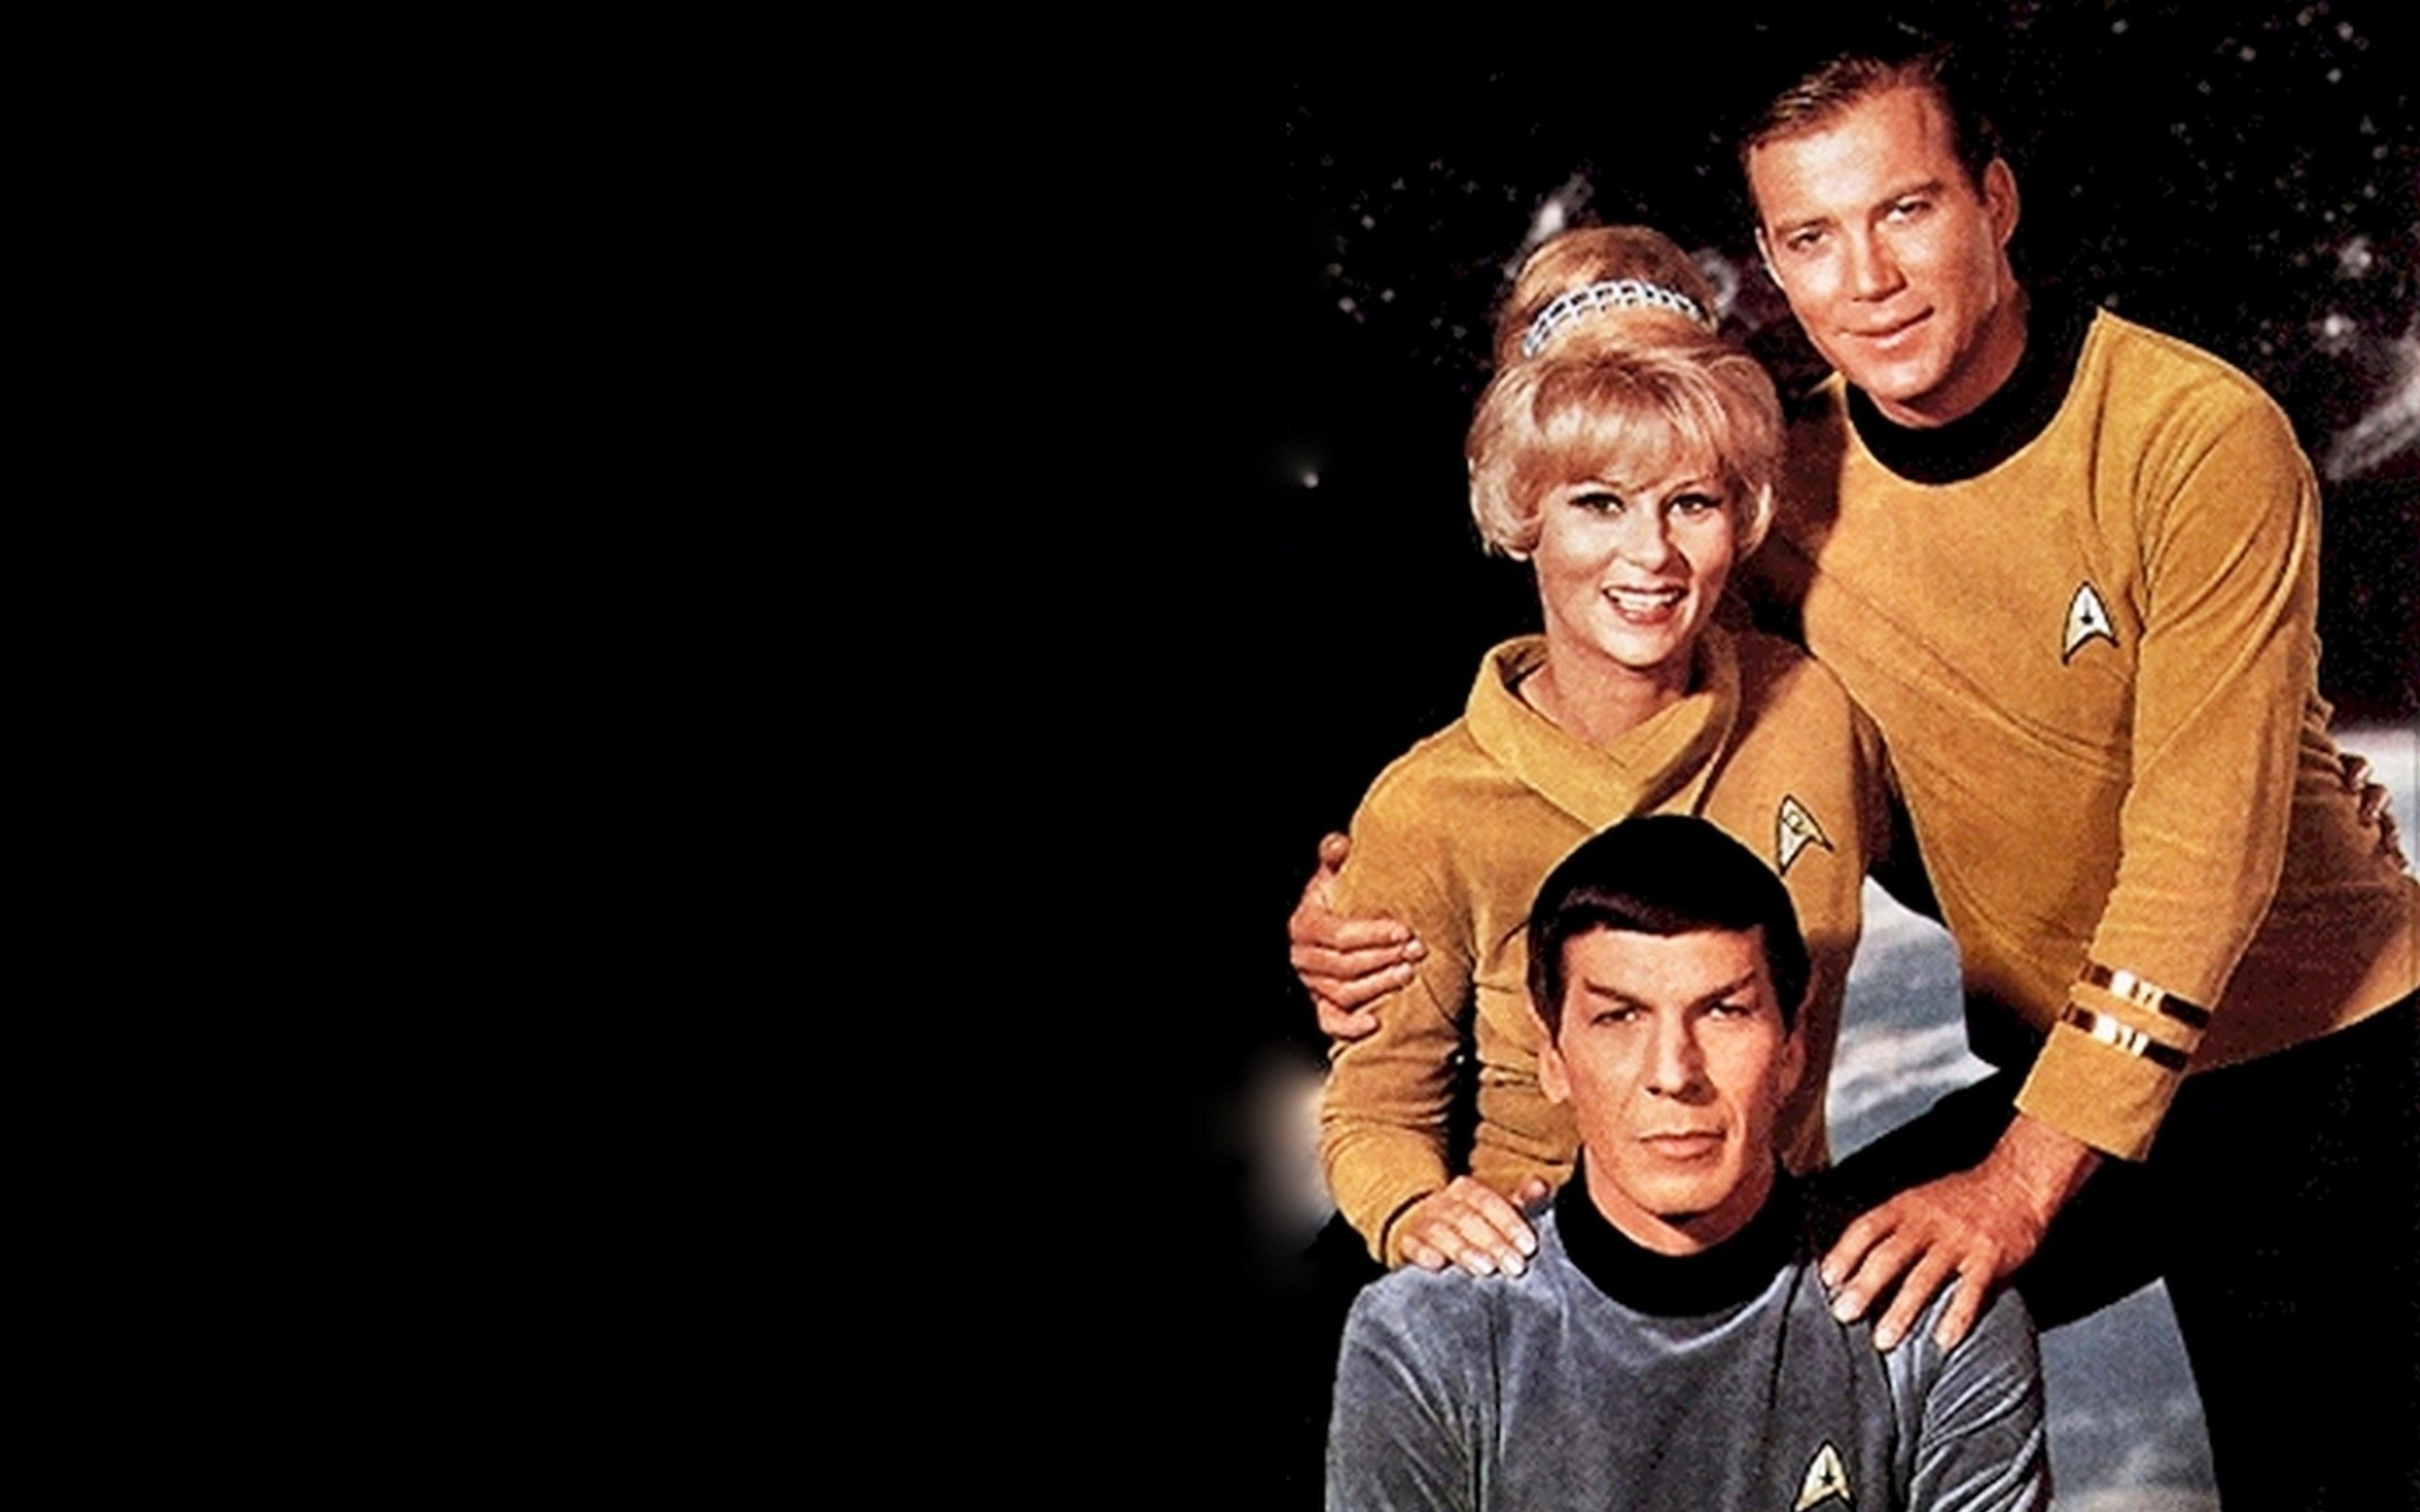 Original Star Trek Wallpaper. Star trek cast, Star